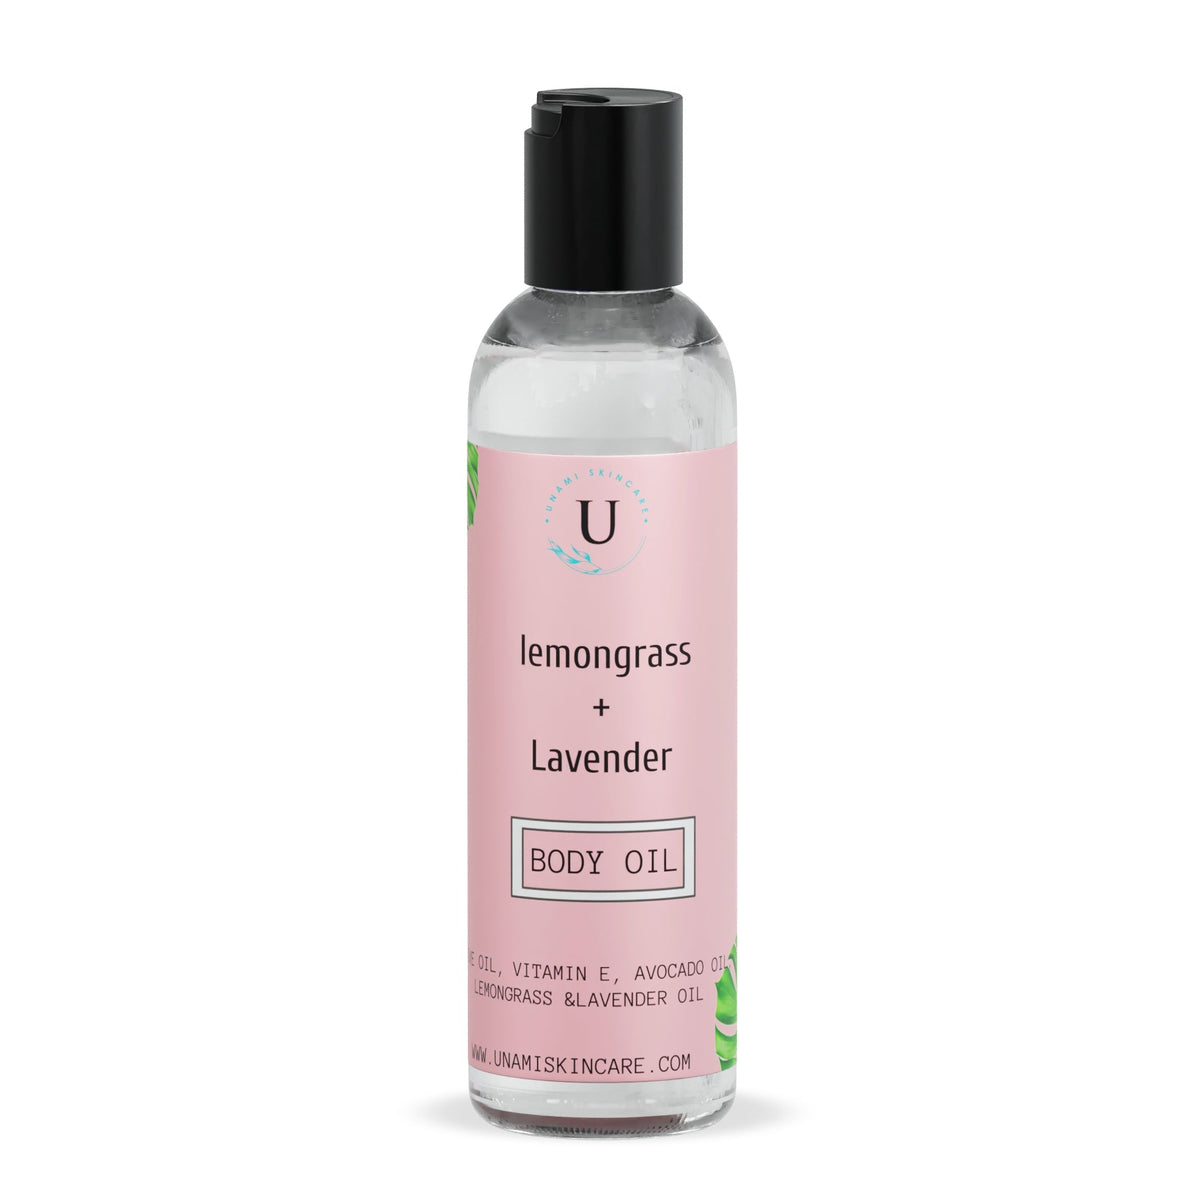 Lemongrass + Lavender Body Oil